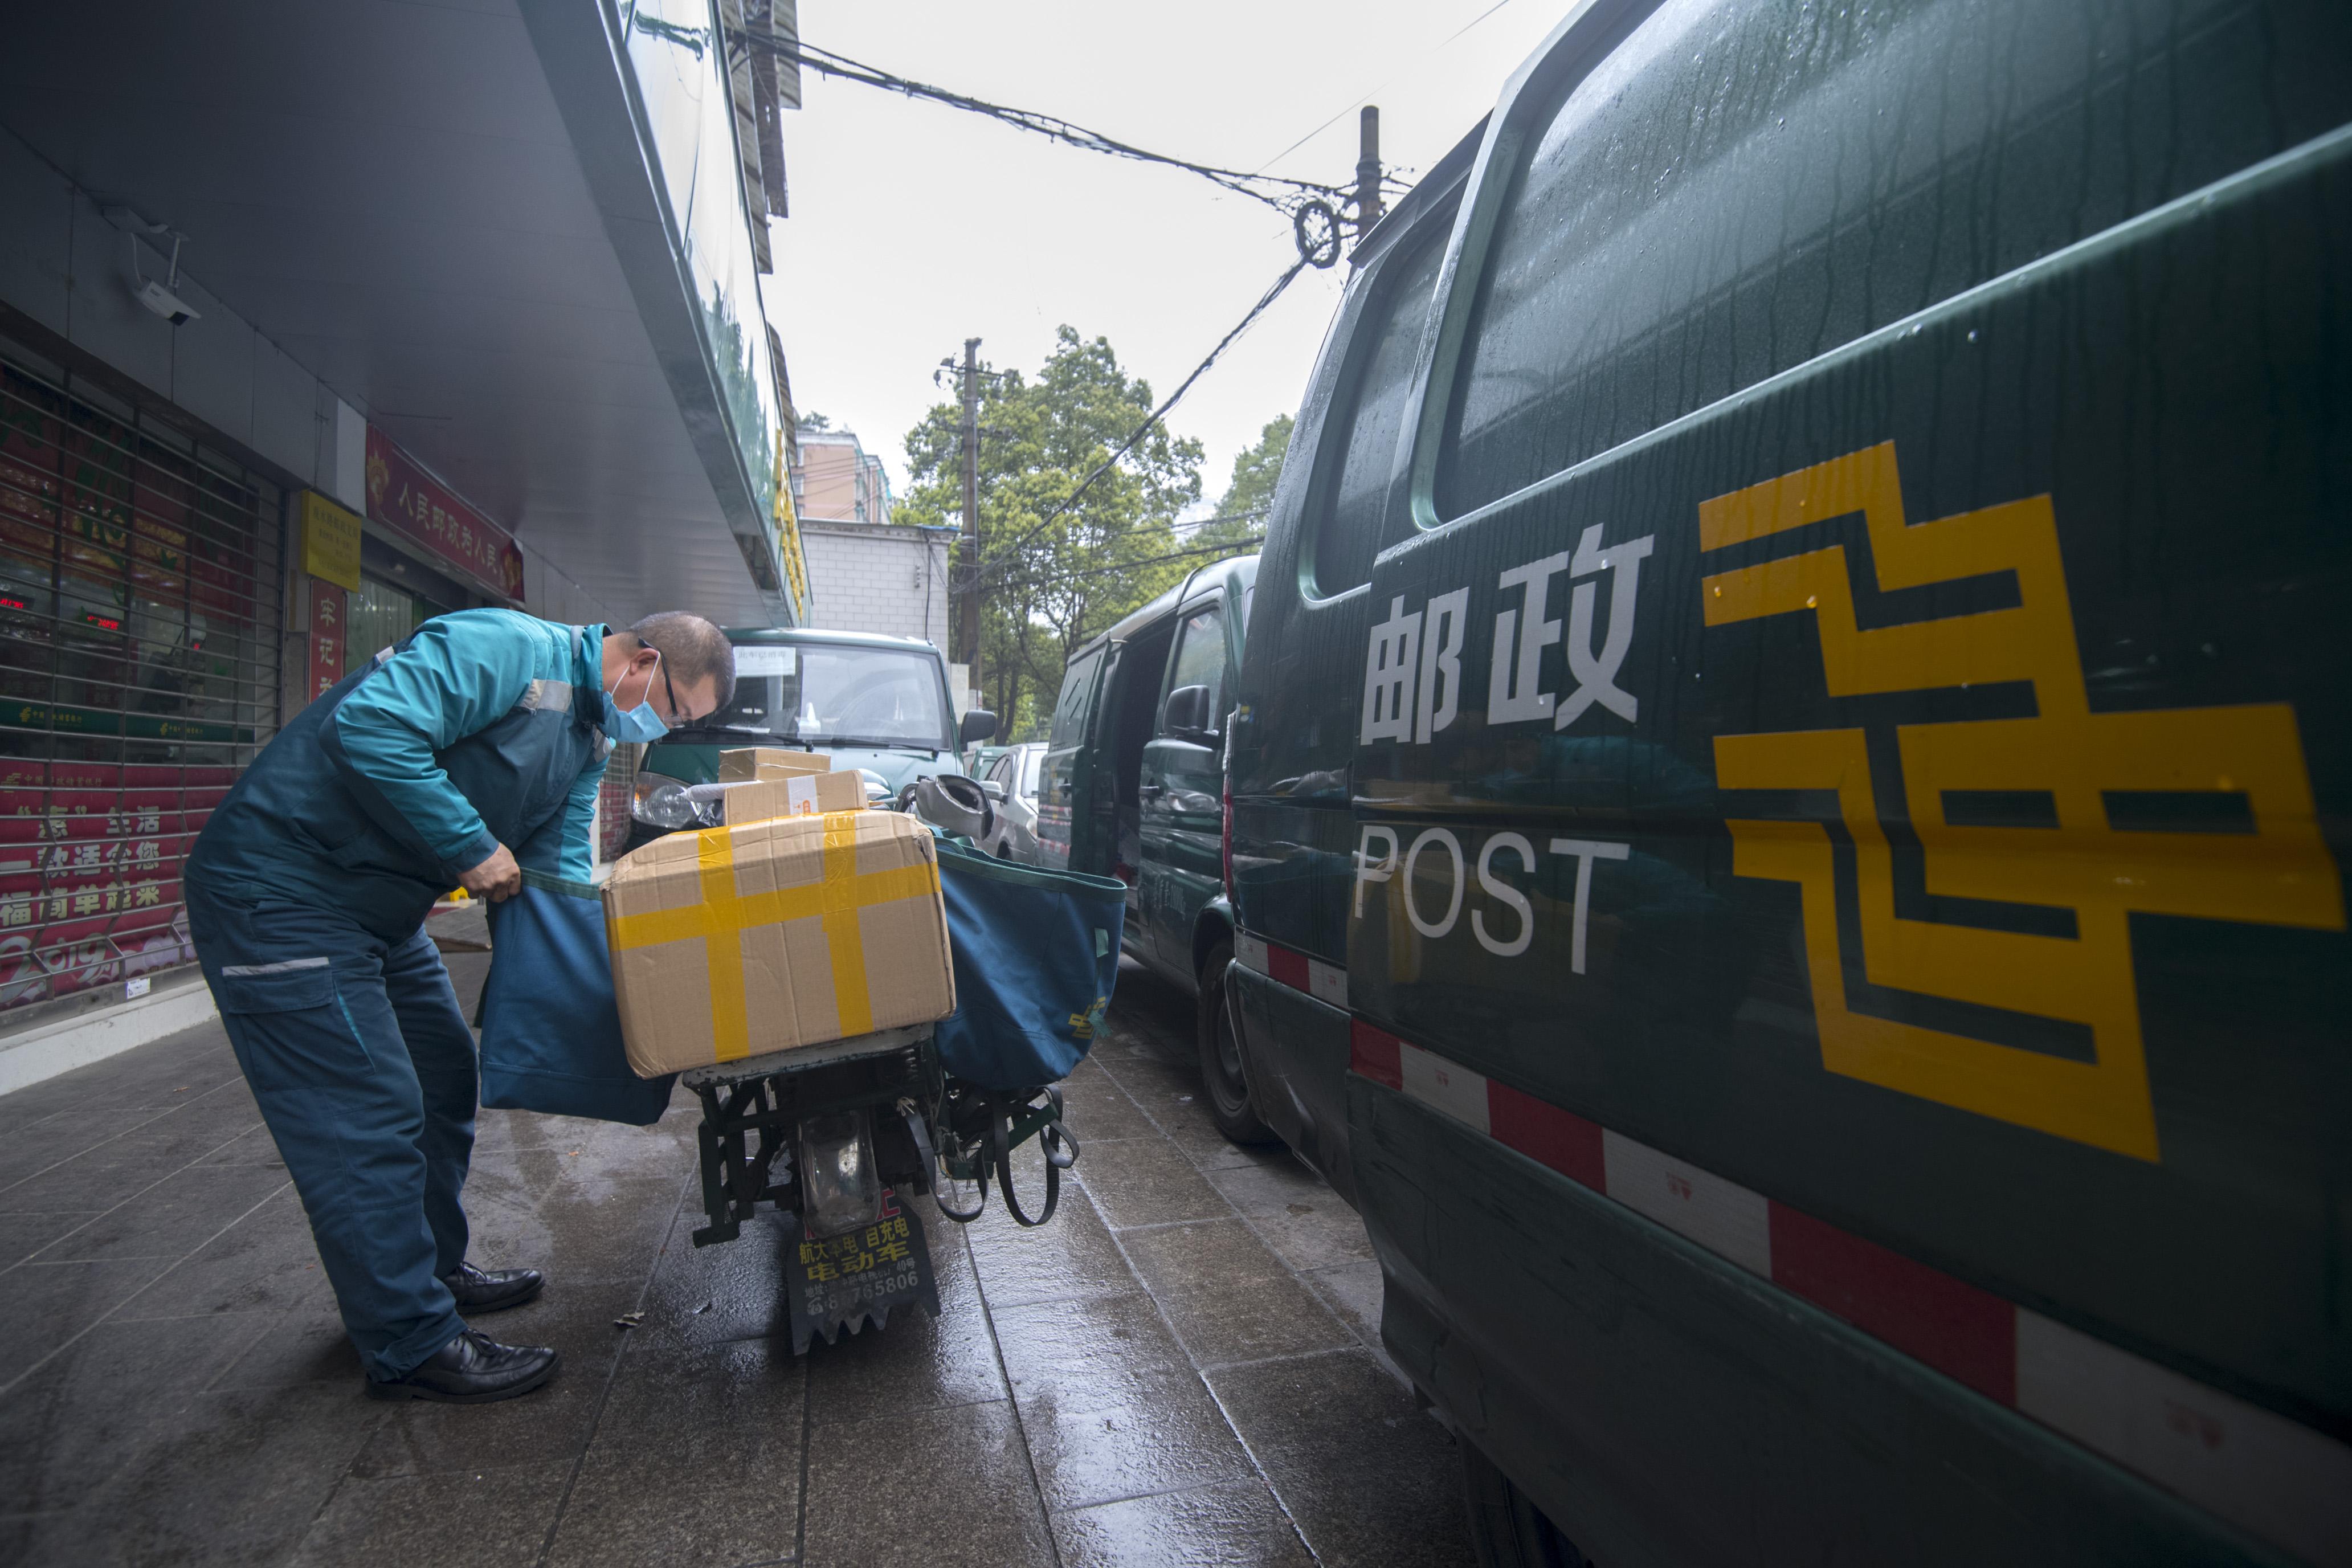 جمعا 749 میلیون پیک و بسته پست ملی چین در تعطیلات عید بهار دریافت و ارسال شده استا